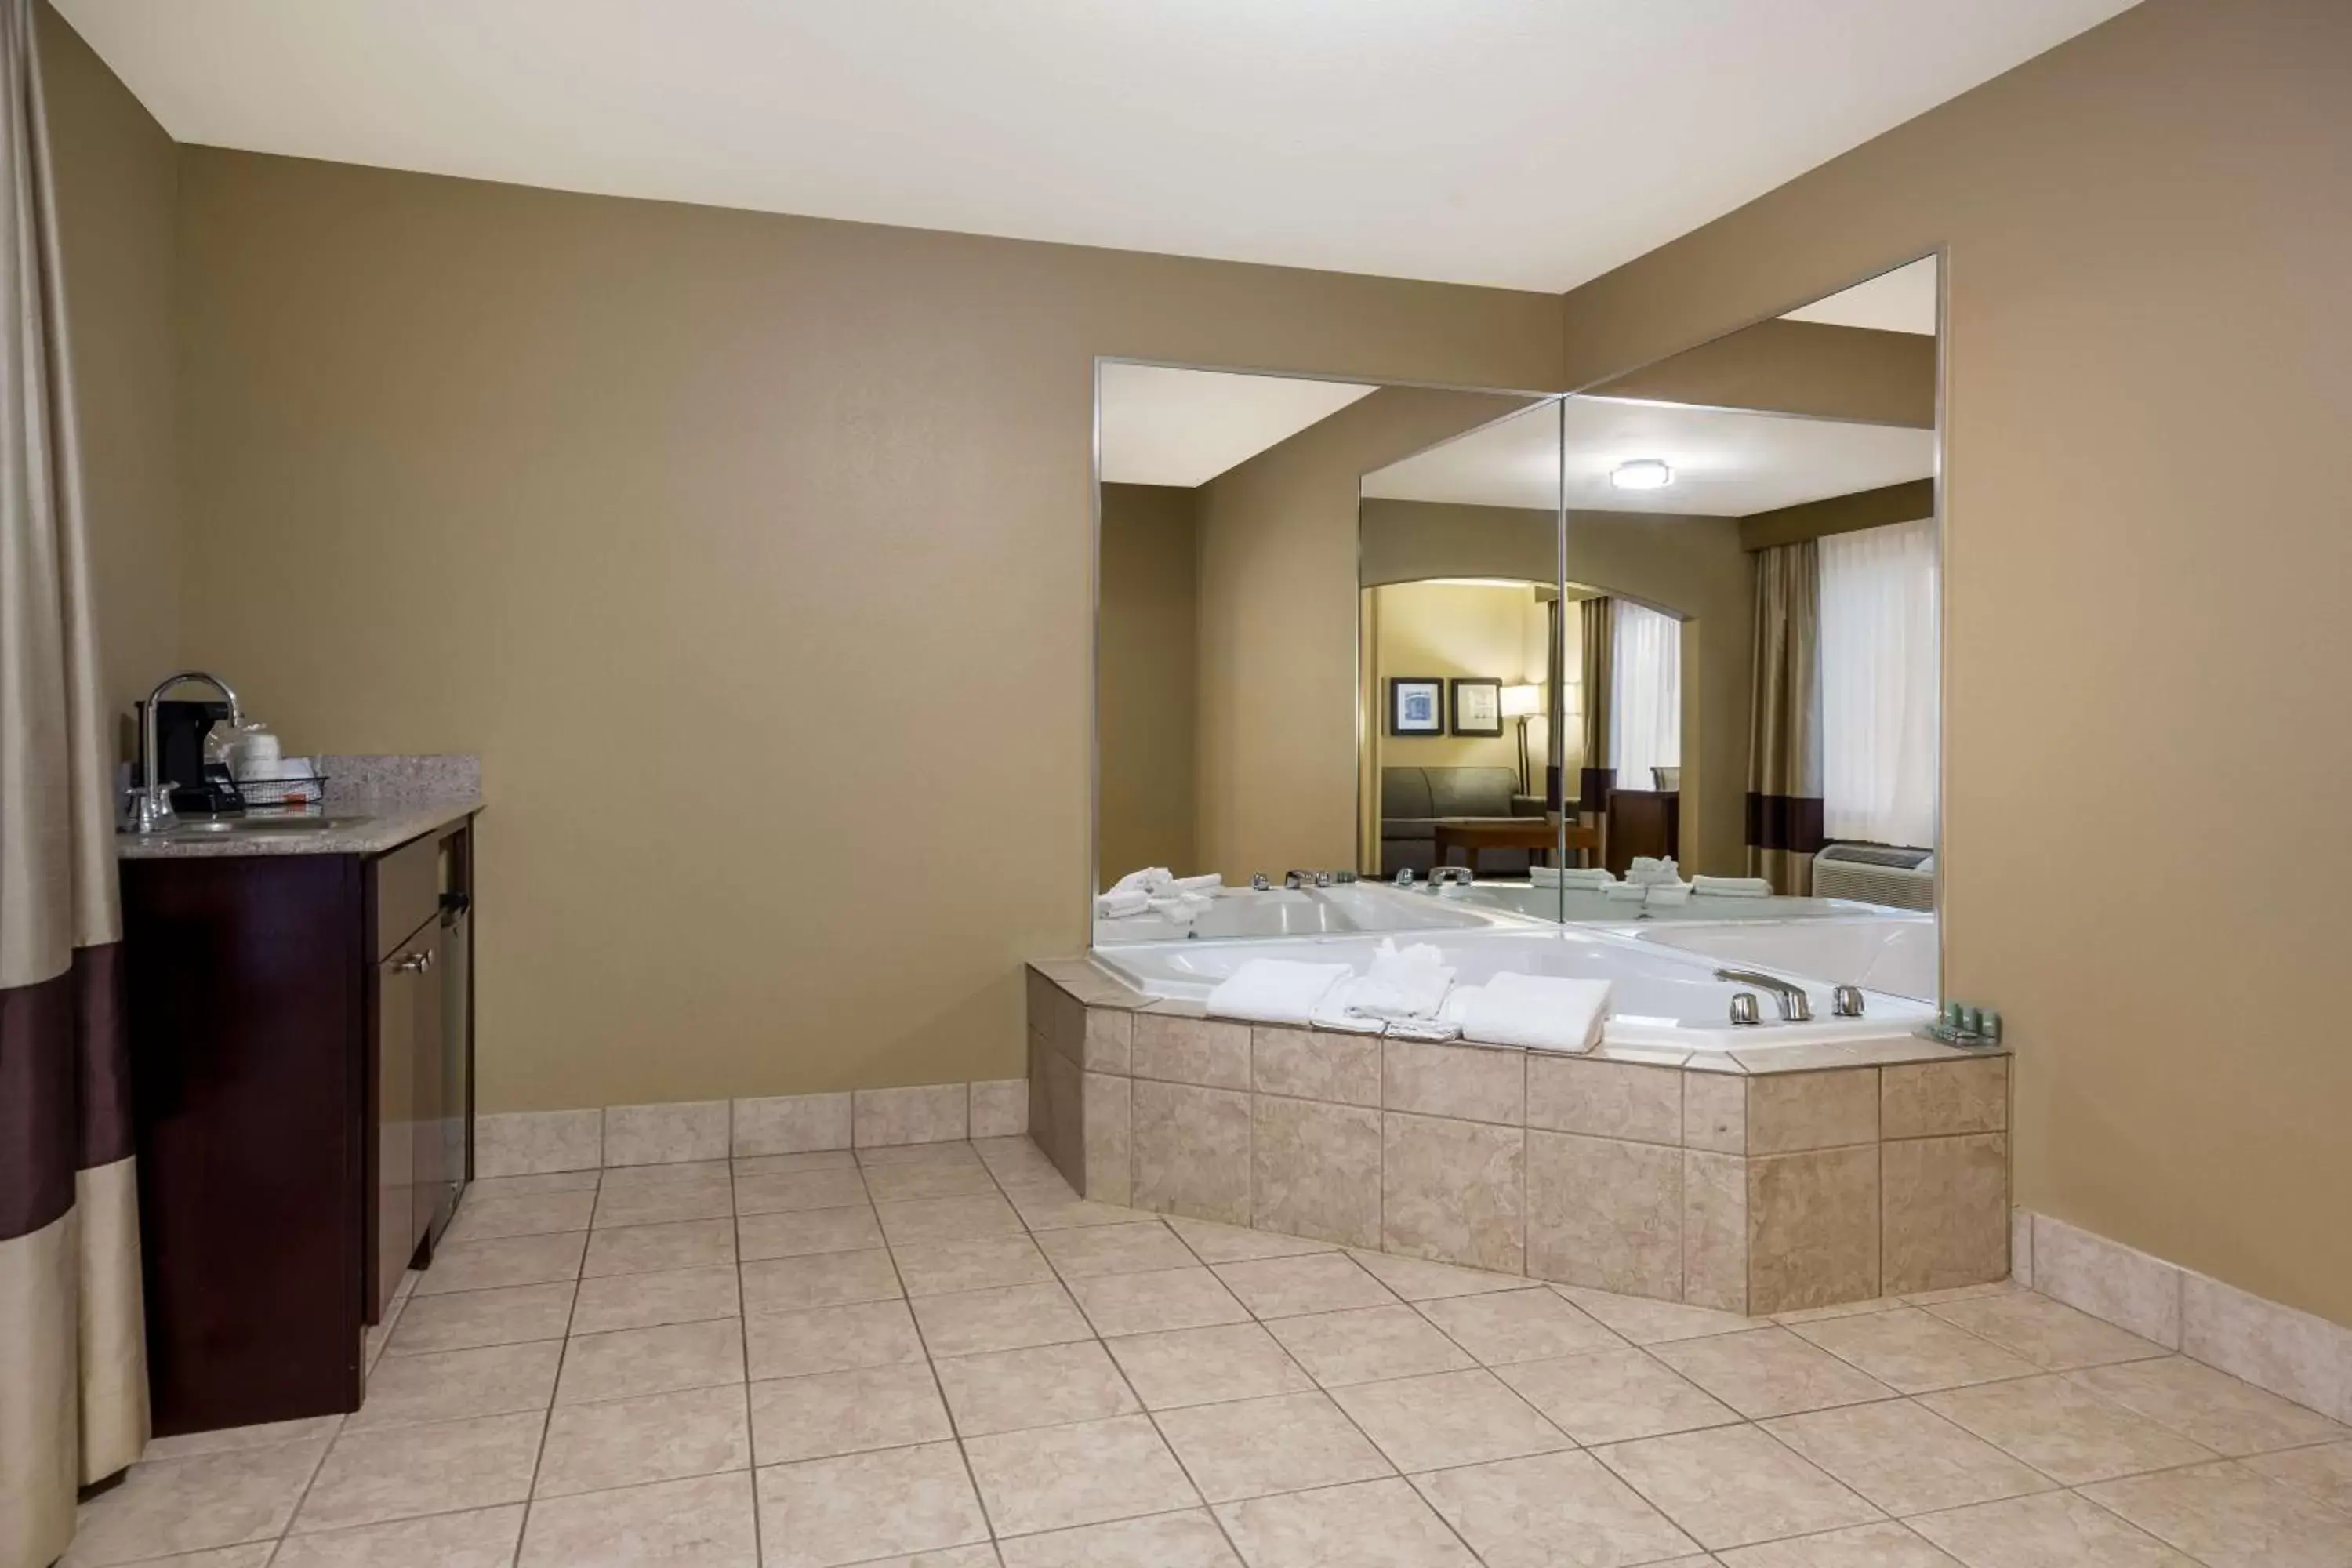 Bedroom, Bathroom in Best Western Morgan City Inn